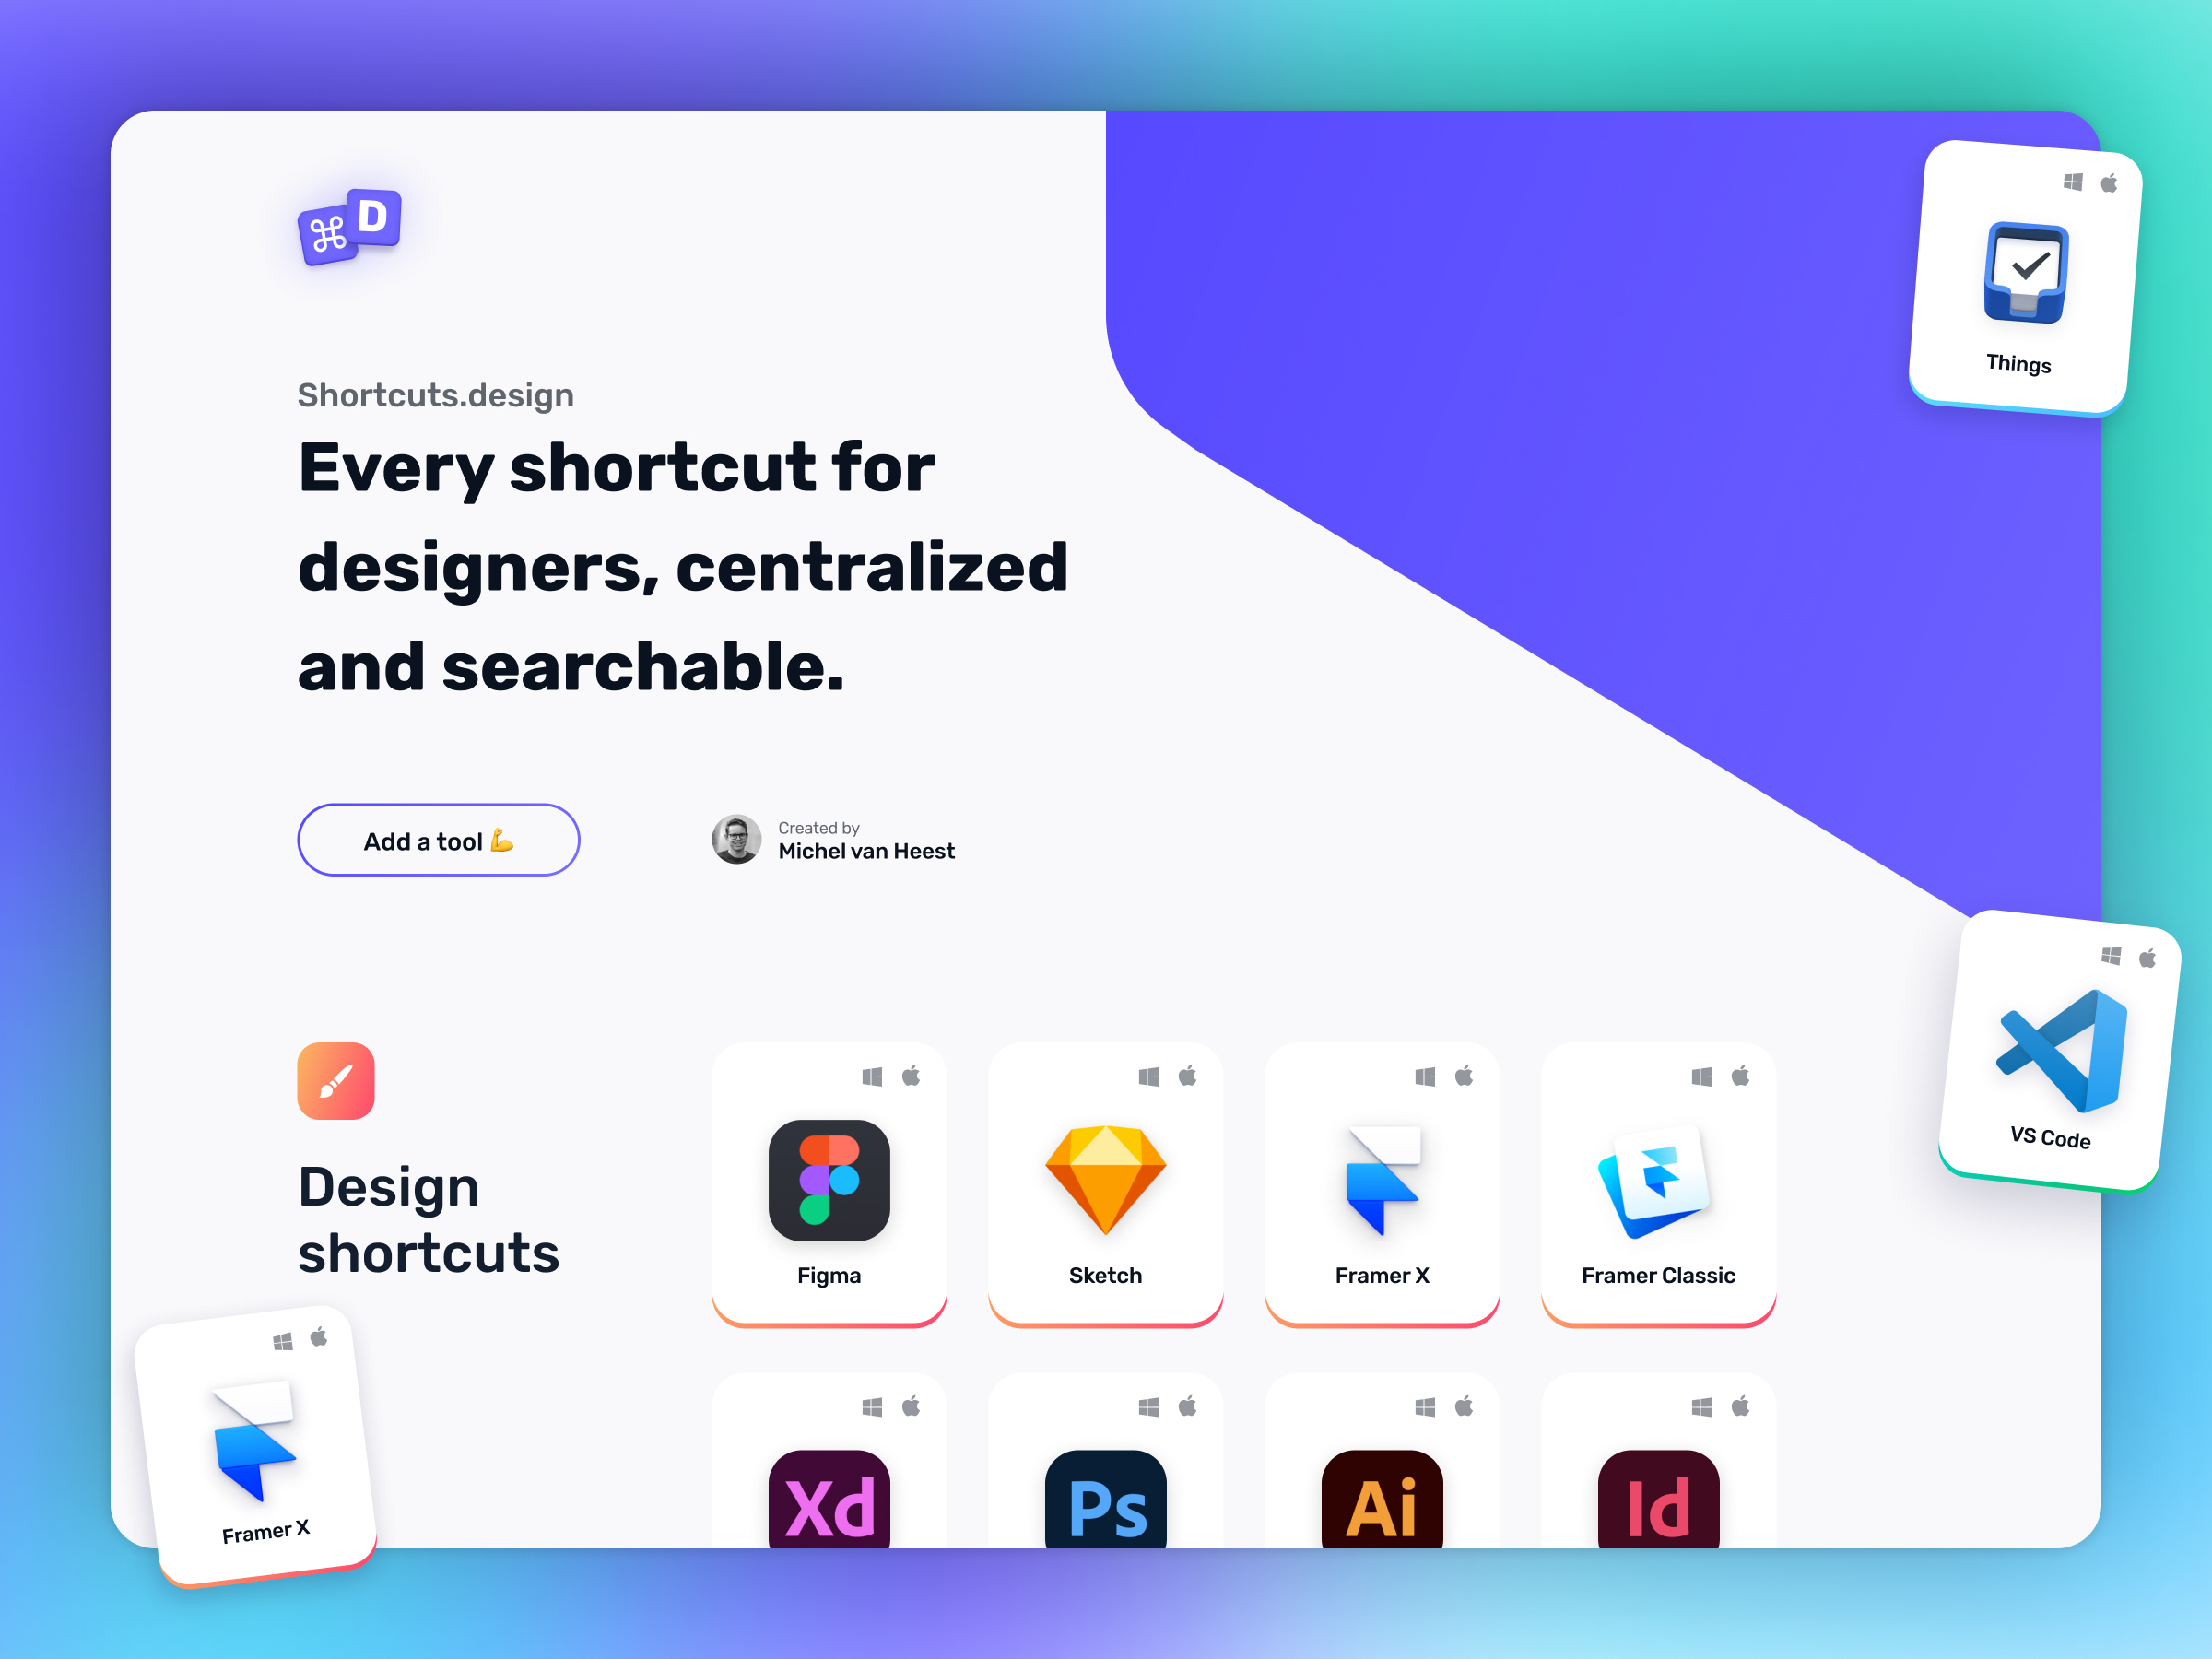 Shortcuts.design V2.0